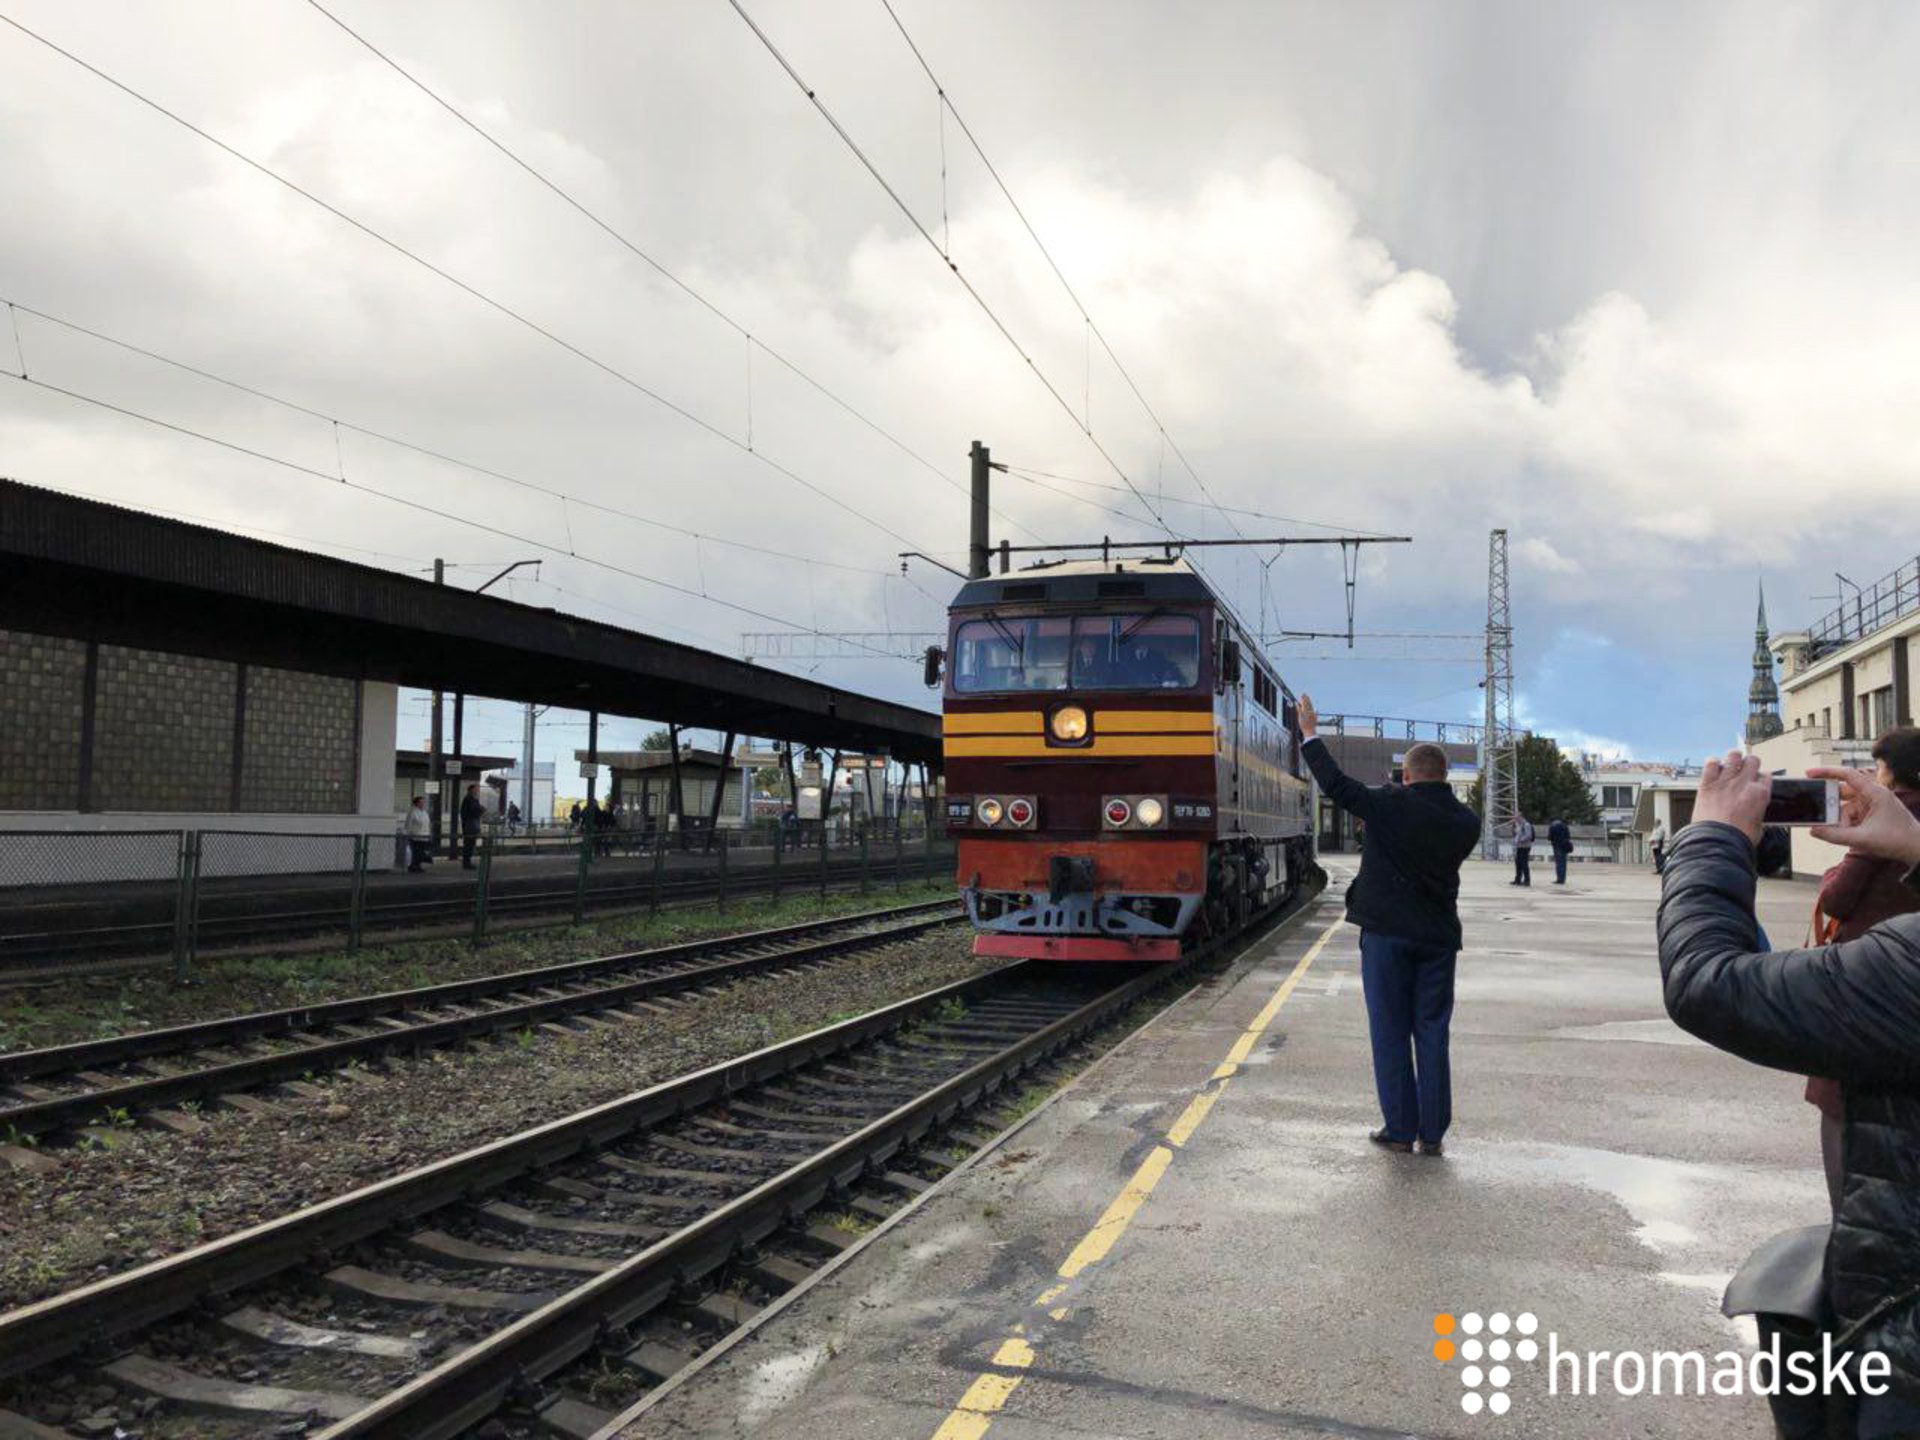 В столицу Латвии прибыл первый рейс украинского поезда «четырех столиц», который ехал из Киева в Минск, далее в Вильнюс и до конечной точки - Риги. 